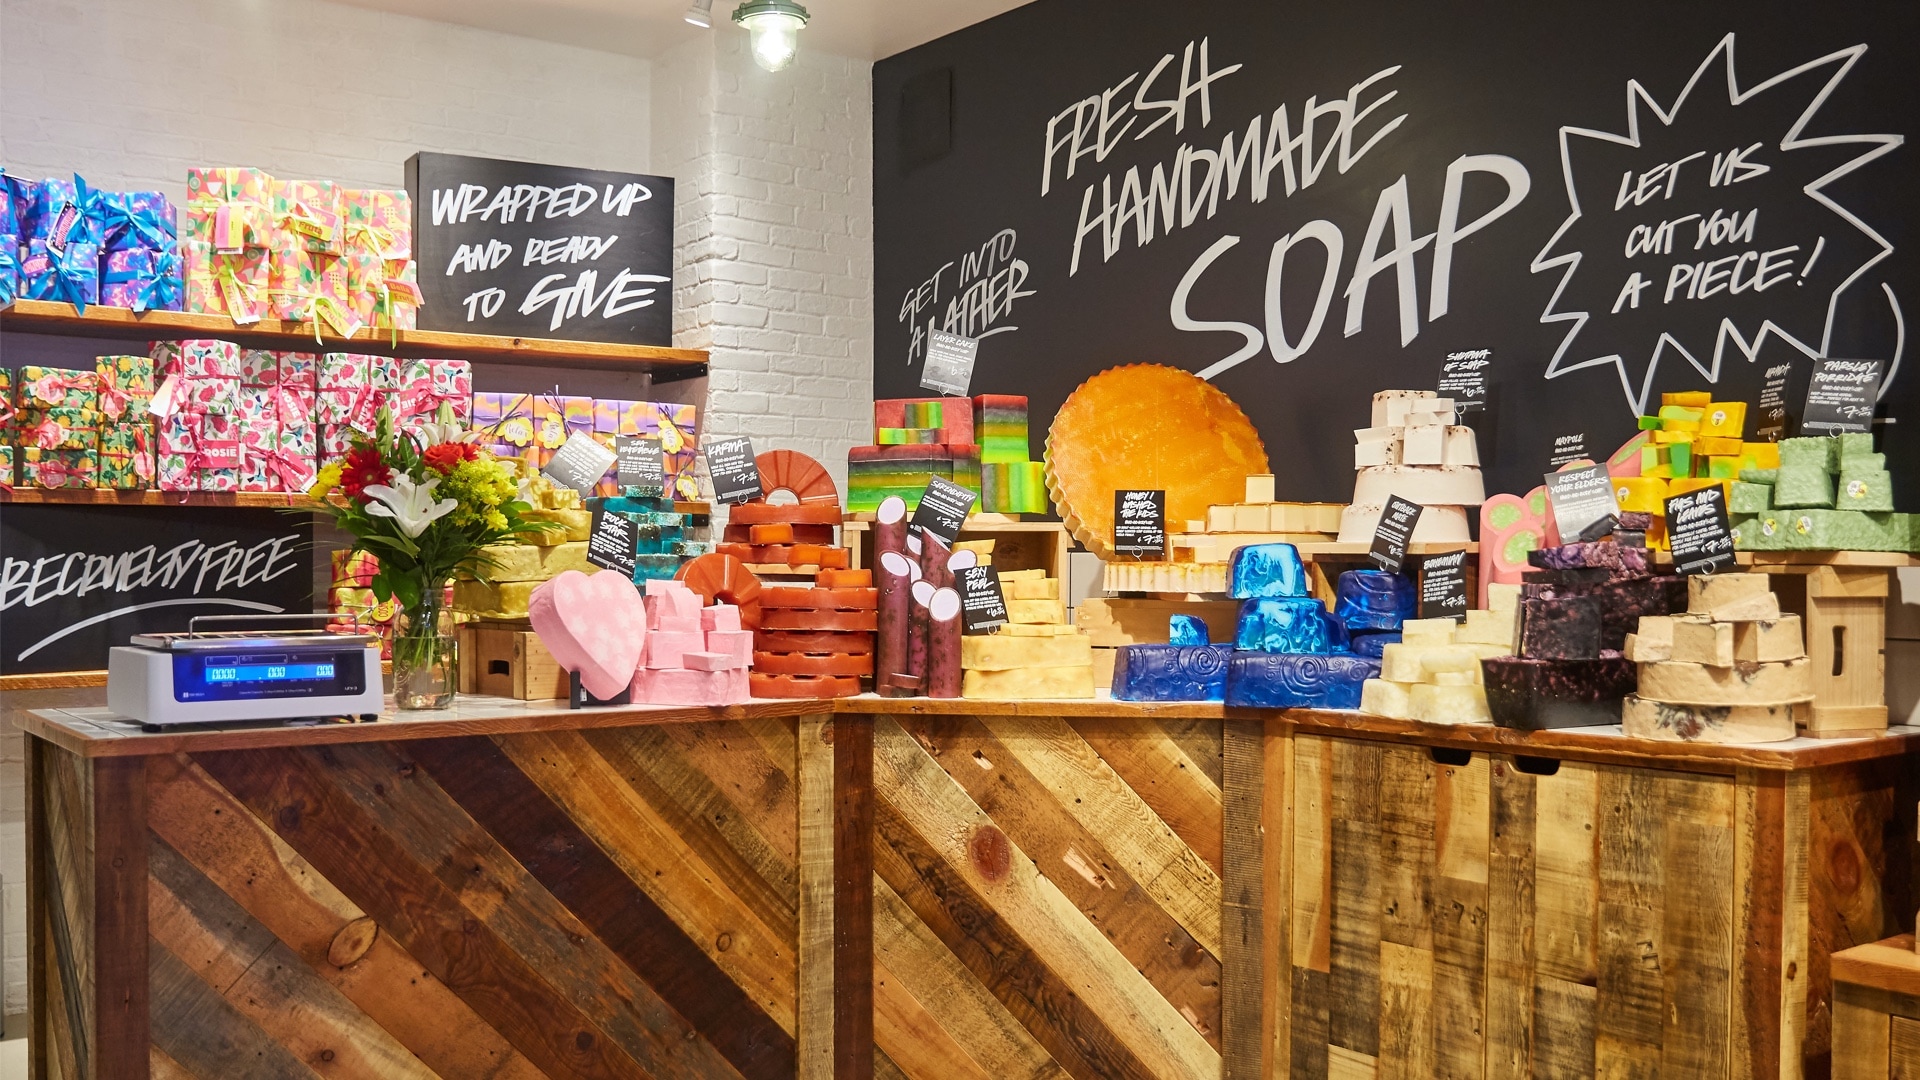 An einer Ecke eines LUSH-Ladens steht ein großes Schild auf dem geschrieben steht: „Fresh Handmade Soap“ und in kleineren Buchstaben „Let us cut you a piece“. Auf einem Tisch liegen verschiedene Farben und Größen von handgemachten LUSH-Seifen.